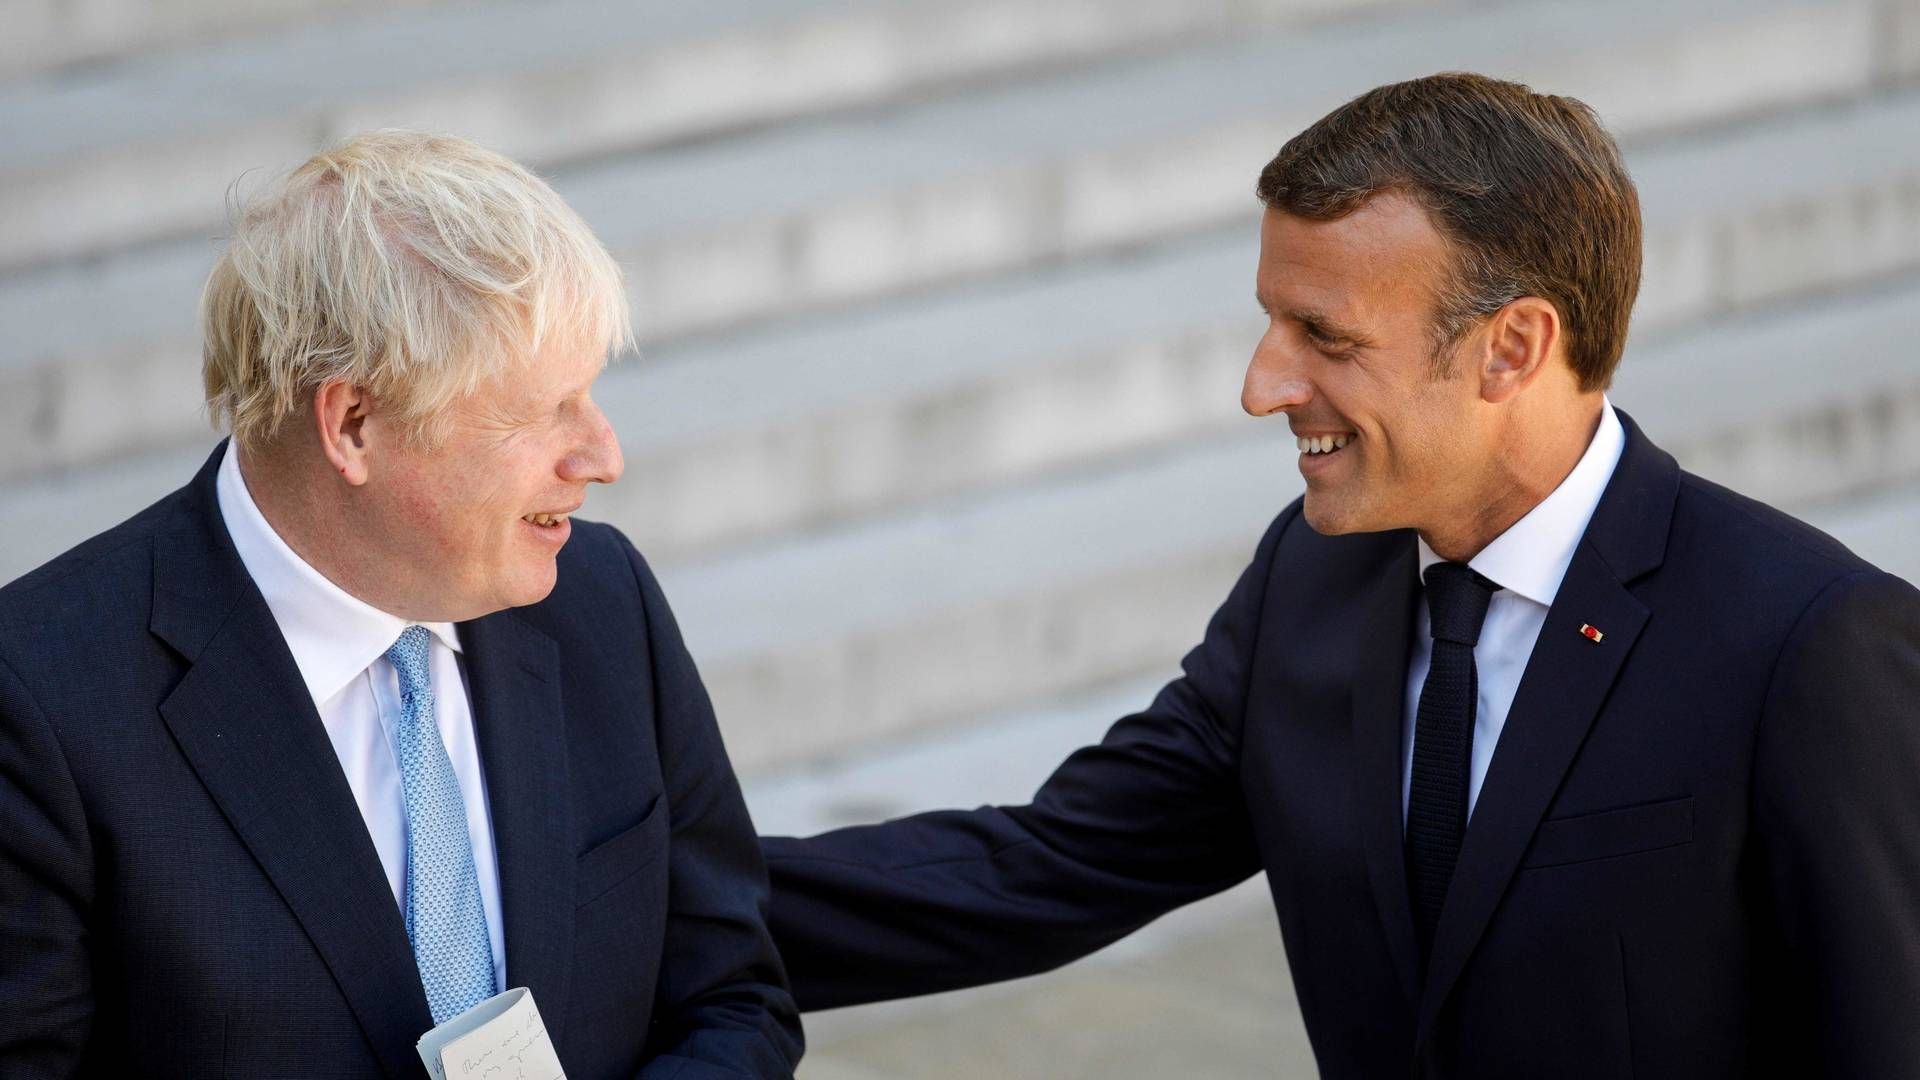 Den britiske premierminister, Boris Johnson, kunne under pressemøde med præsident Emmanuel Macron ikke henvise til en konkrete regeringsplan for en irsk løsning på brexit. | Foto: Geoffroy van der Hasselt/AFP / AFP/Ritzau Scanpix